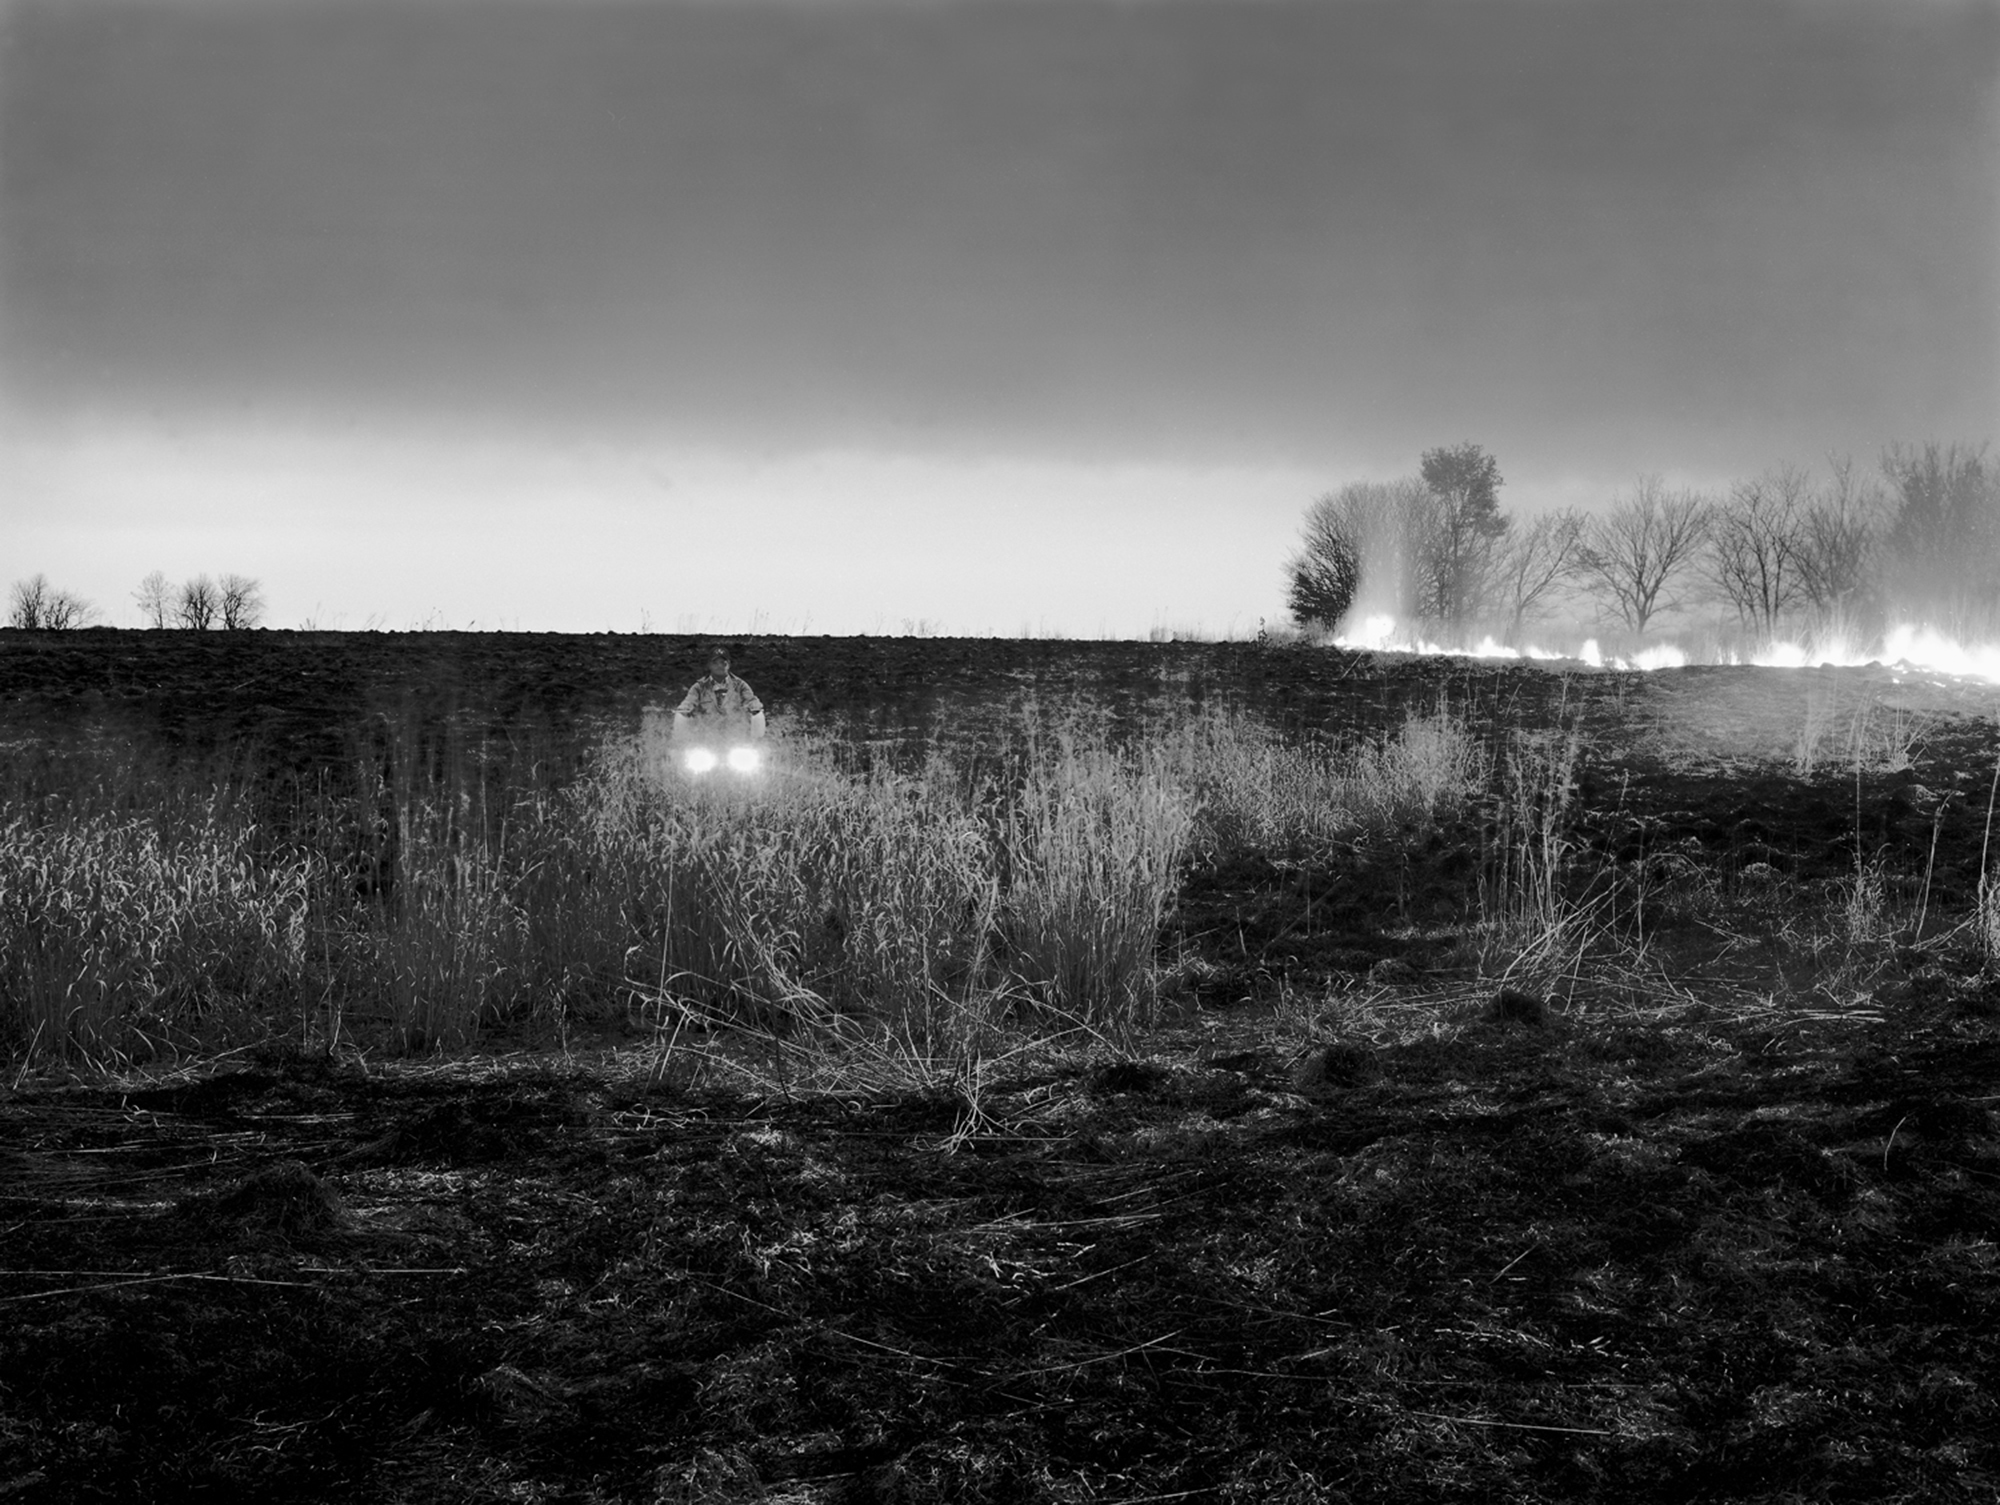 A rancher burning a field - Osage, KS.